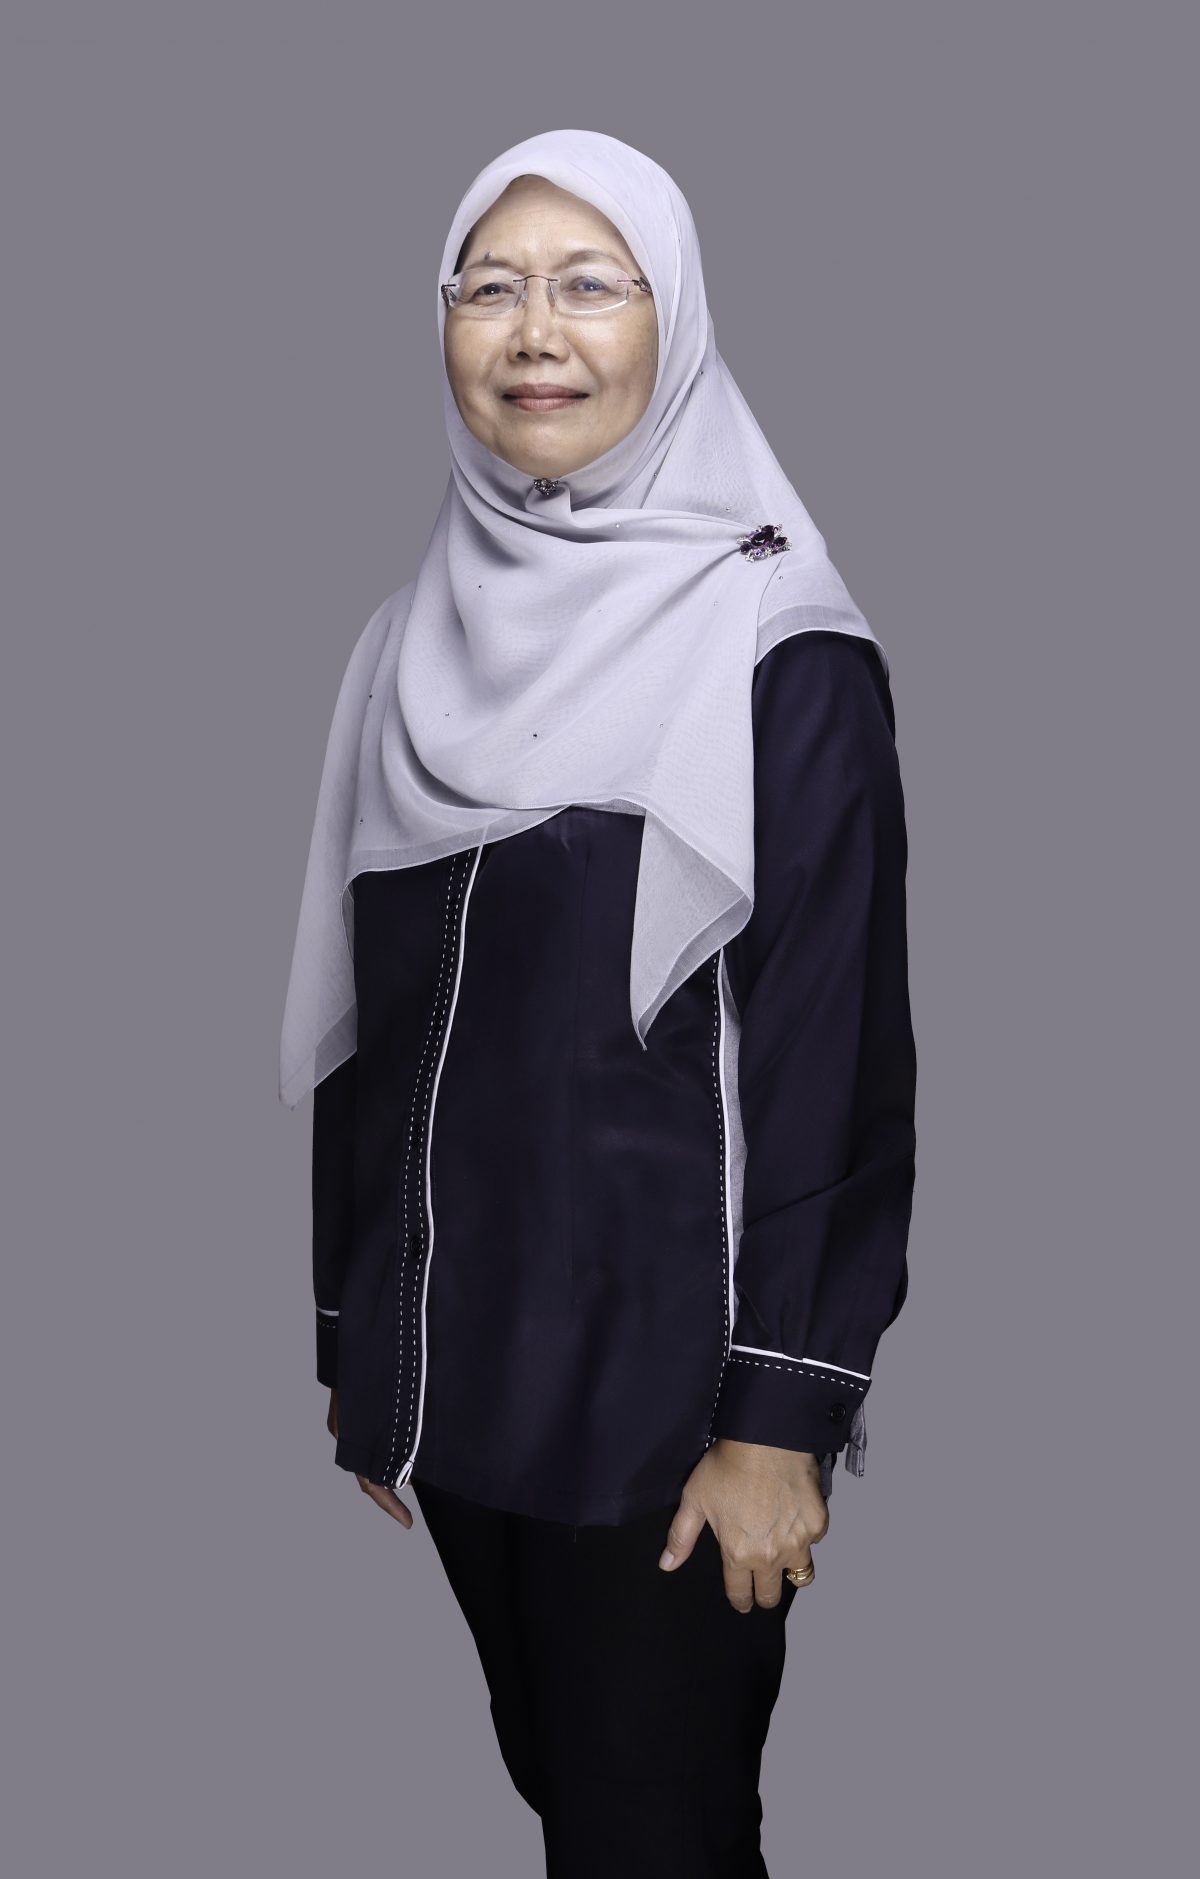 Dr Junaidah Binti Abd Wahab – Pusat Kesihatan Universiti